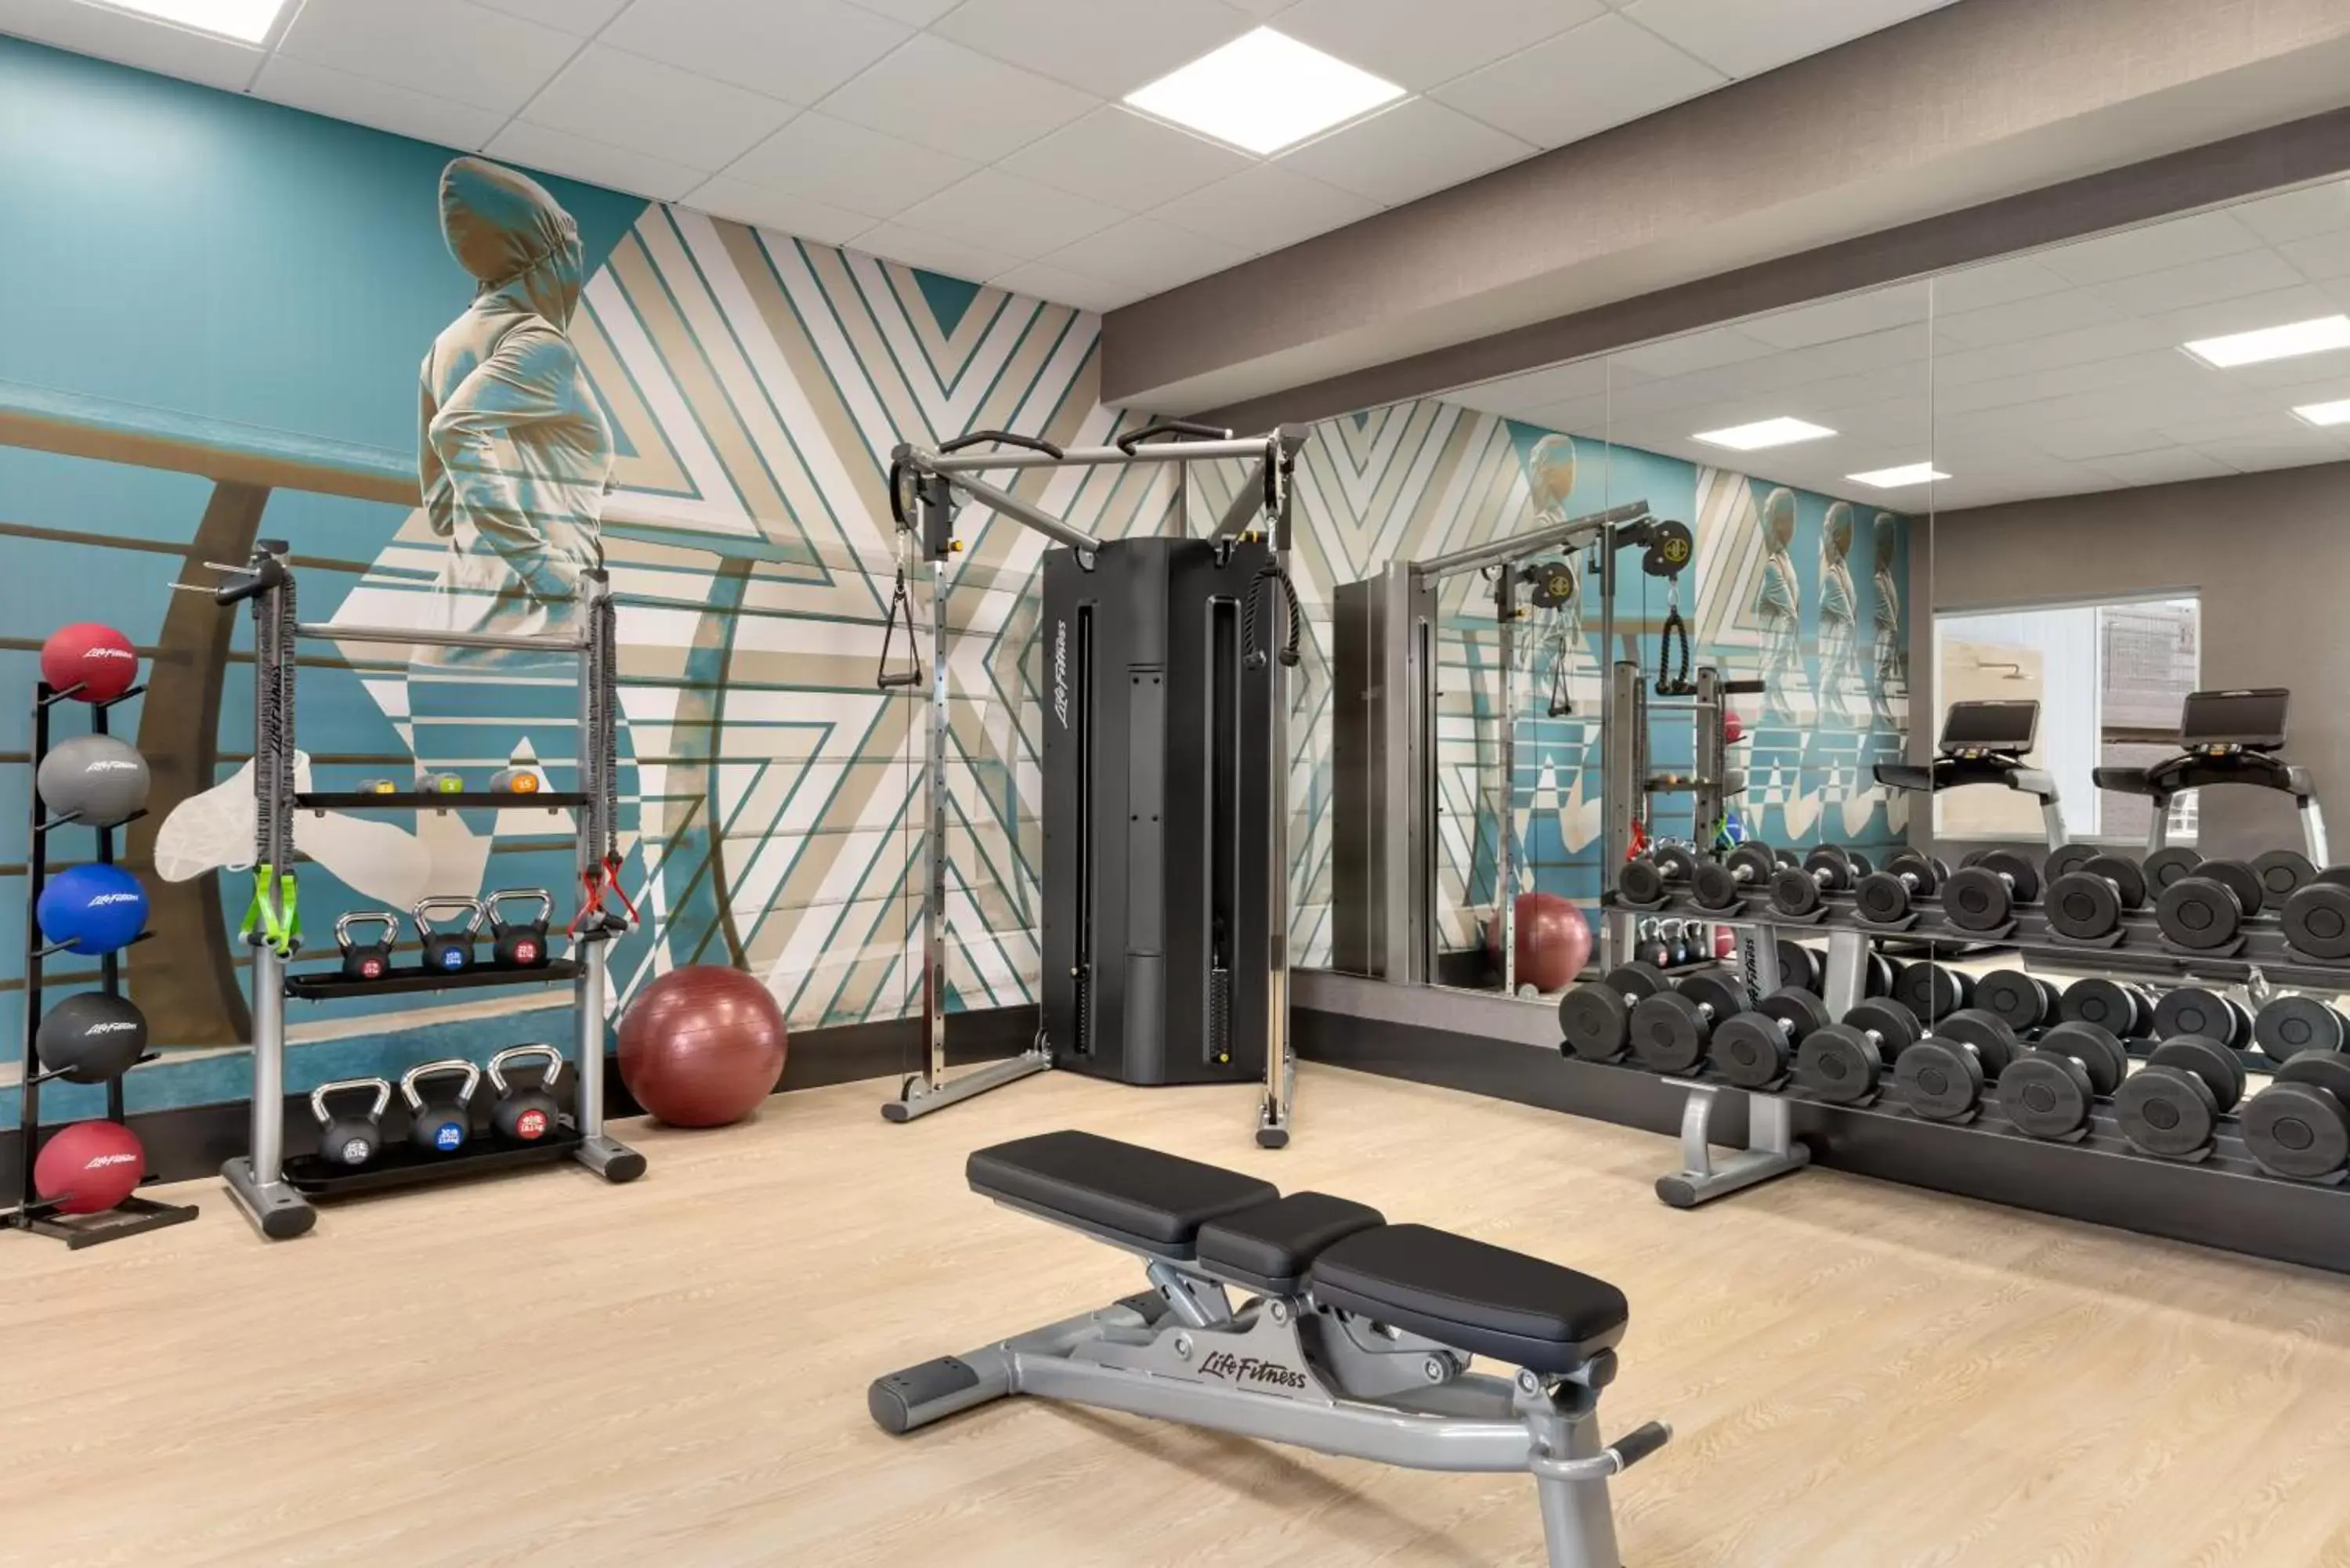 Fitness centre/facilities, Fitness Center/Facilities in Hyatt House Atlanta Perimeter Center